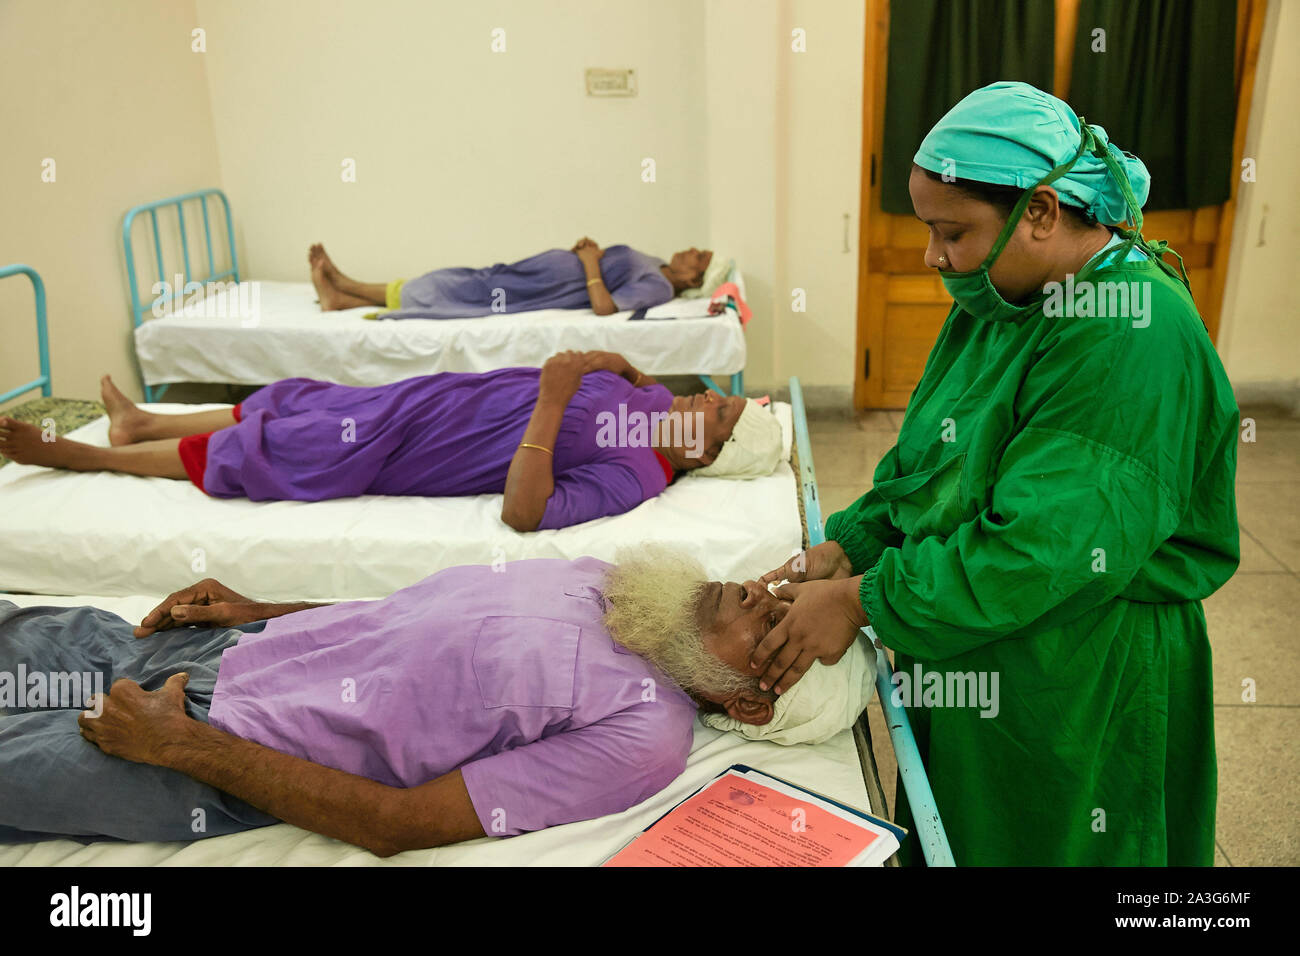 Bangladesch Khulna Eye Hospital mit Patienten auf die Operation Zimmer 29-09-2014 Foto: Jaco Klamer Stockfoto